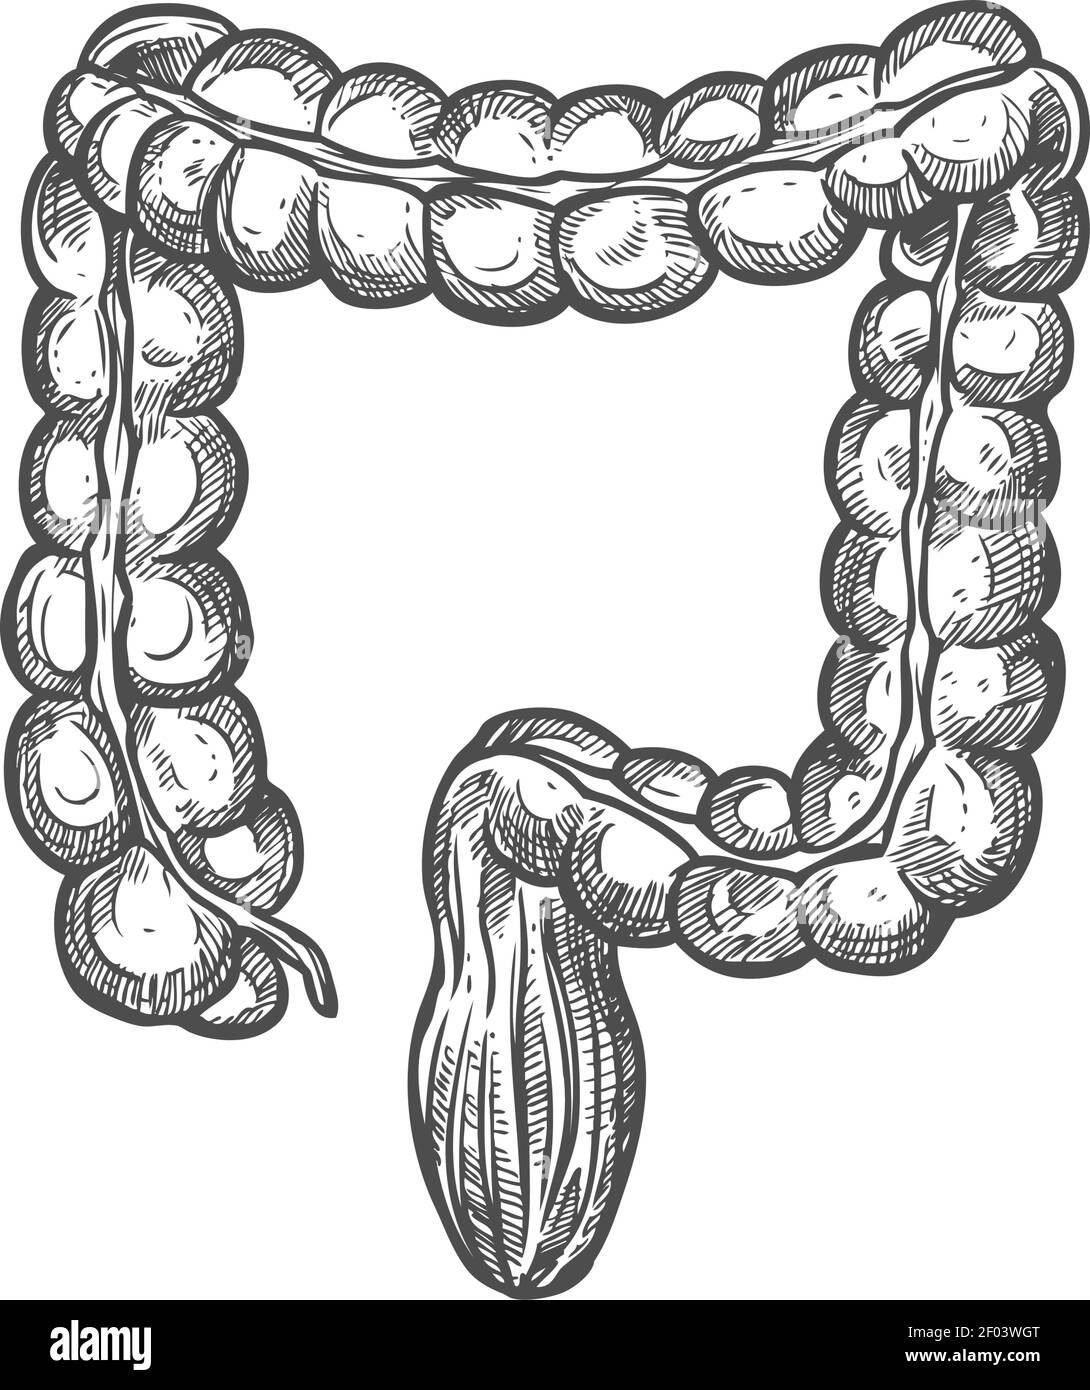 Icona dell'intestino crasso, vettore isolato dell'organo del sistema digestivo. Schizzo trasversale del colon e del retto Illustrazione Vettoriale